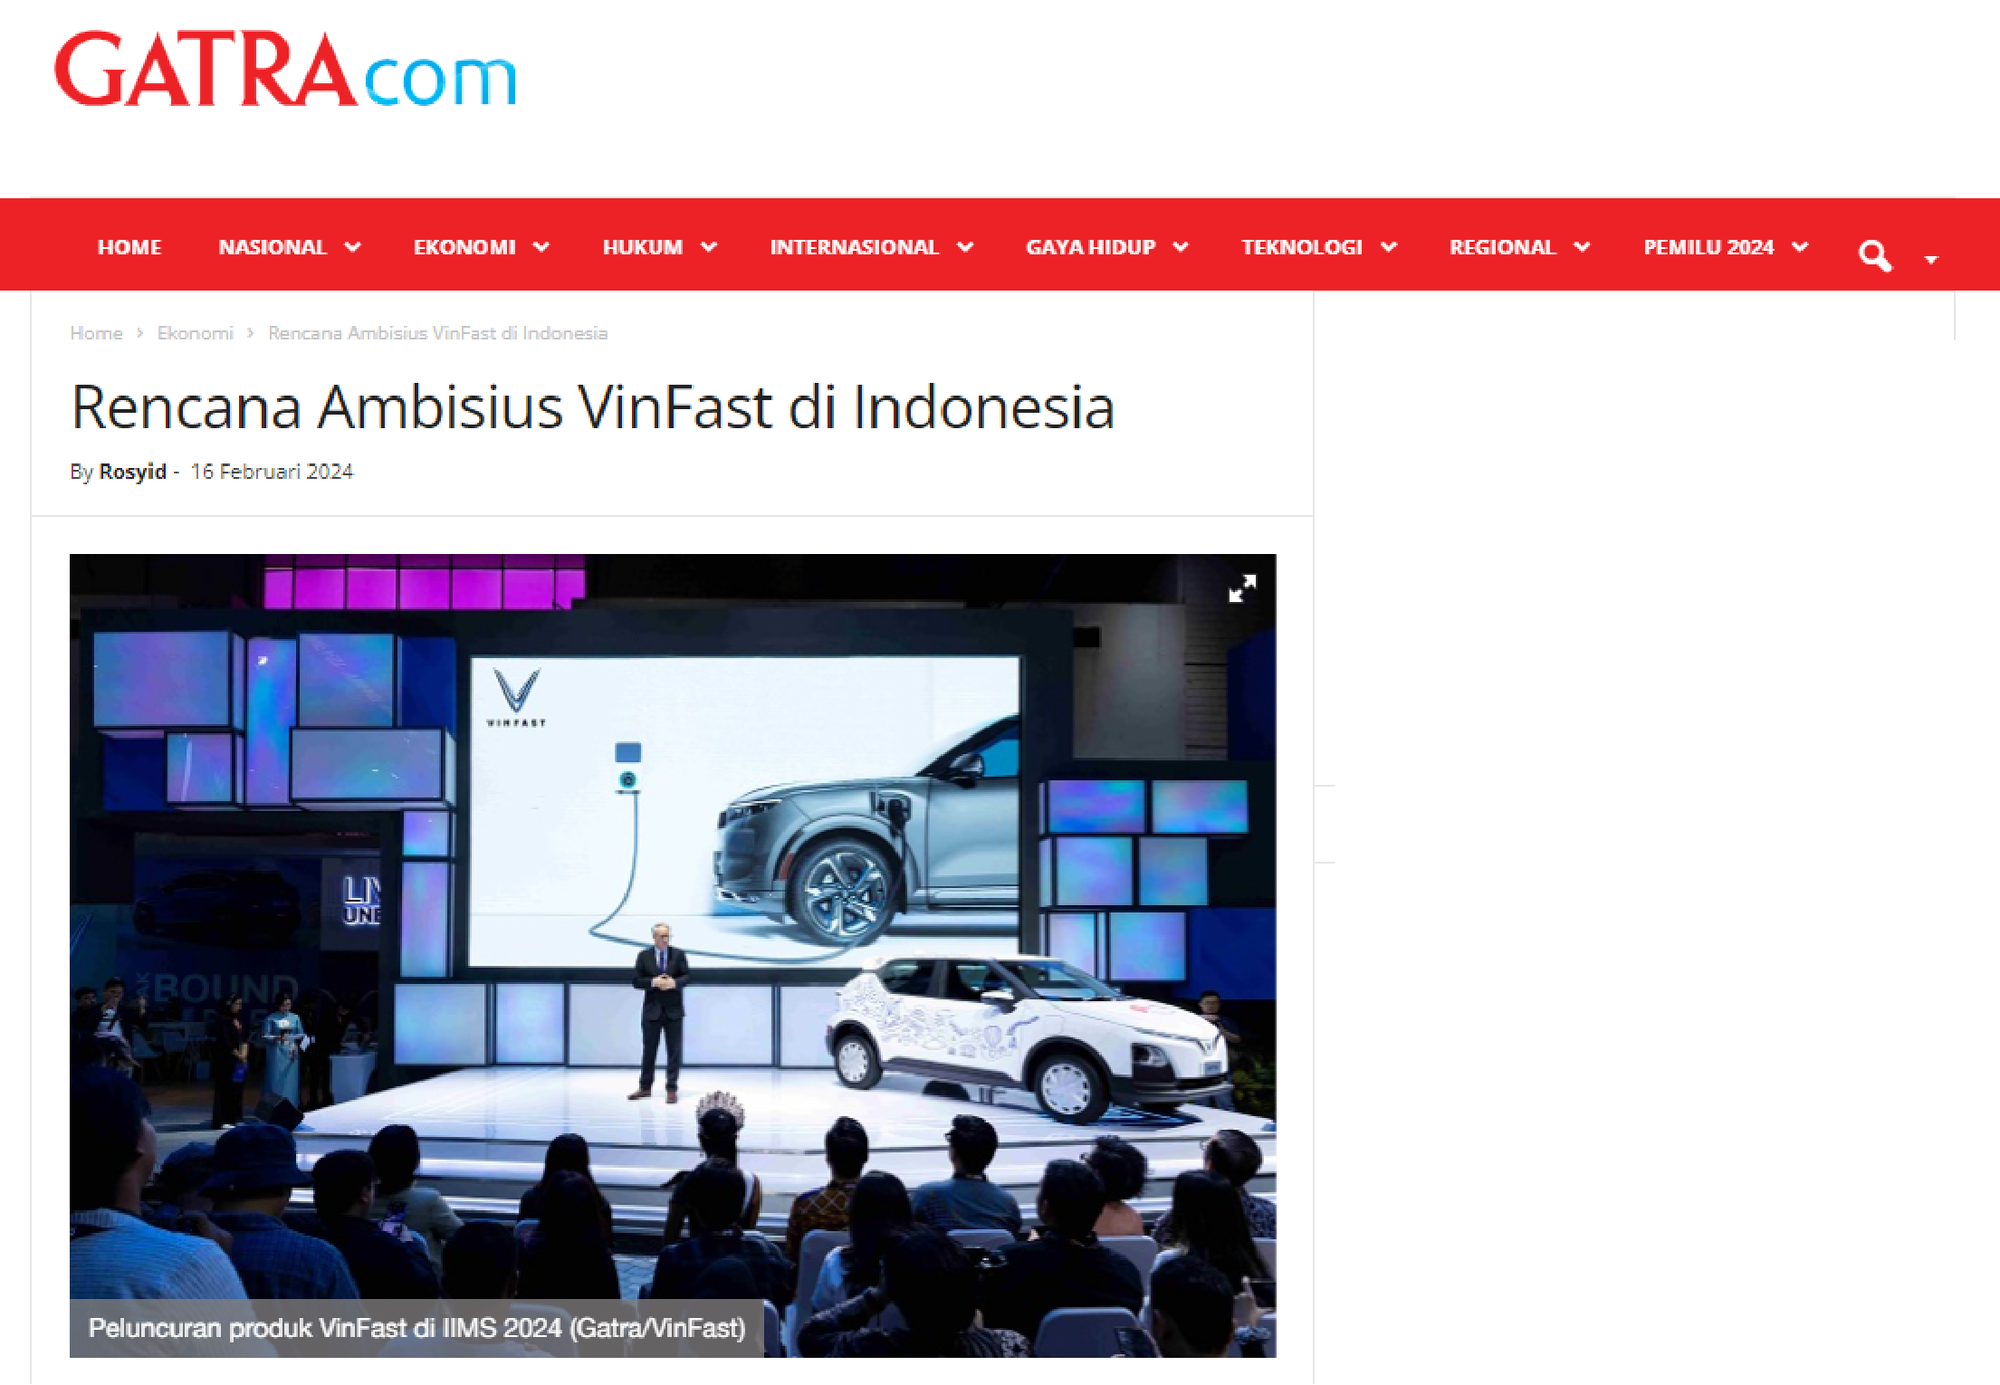 VinFast mang xe tới Indonesia, báo nước ngoài nhất loạt đưa tin: Hé lộ nhiều điều chưa được biết tới? - Ảnh 7.